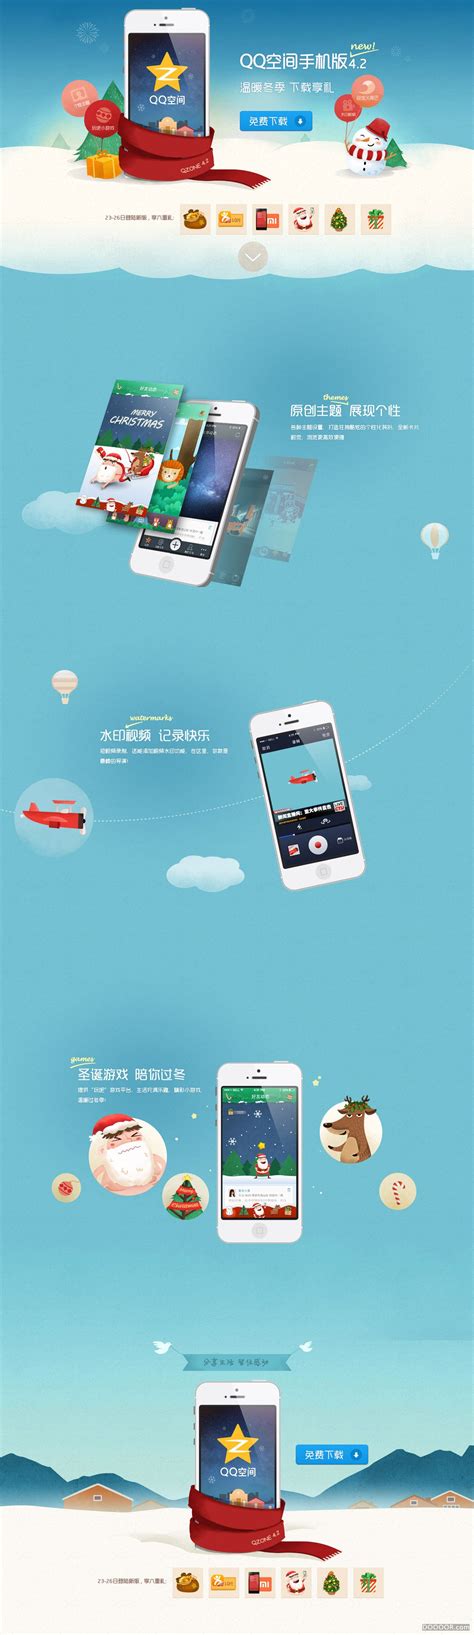 QQ空间手机版宣传页设计欣赏